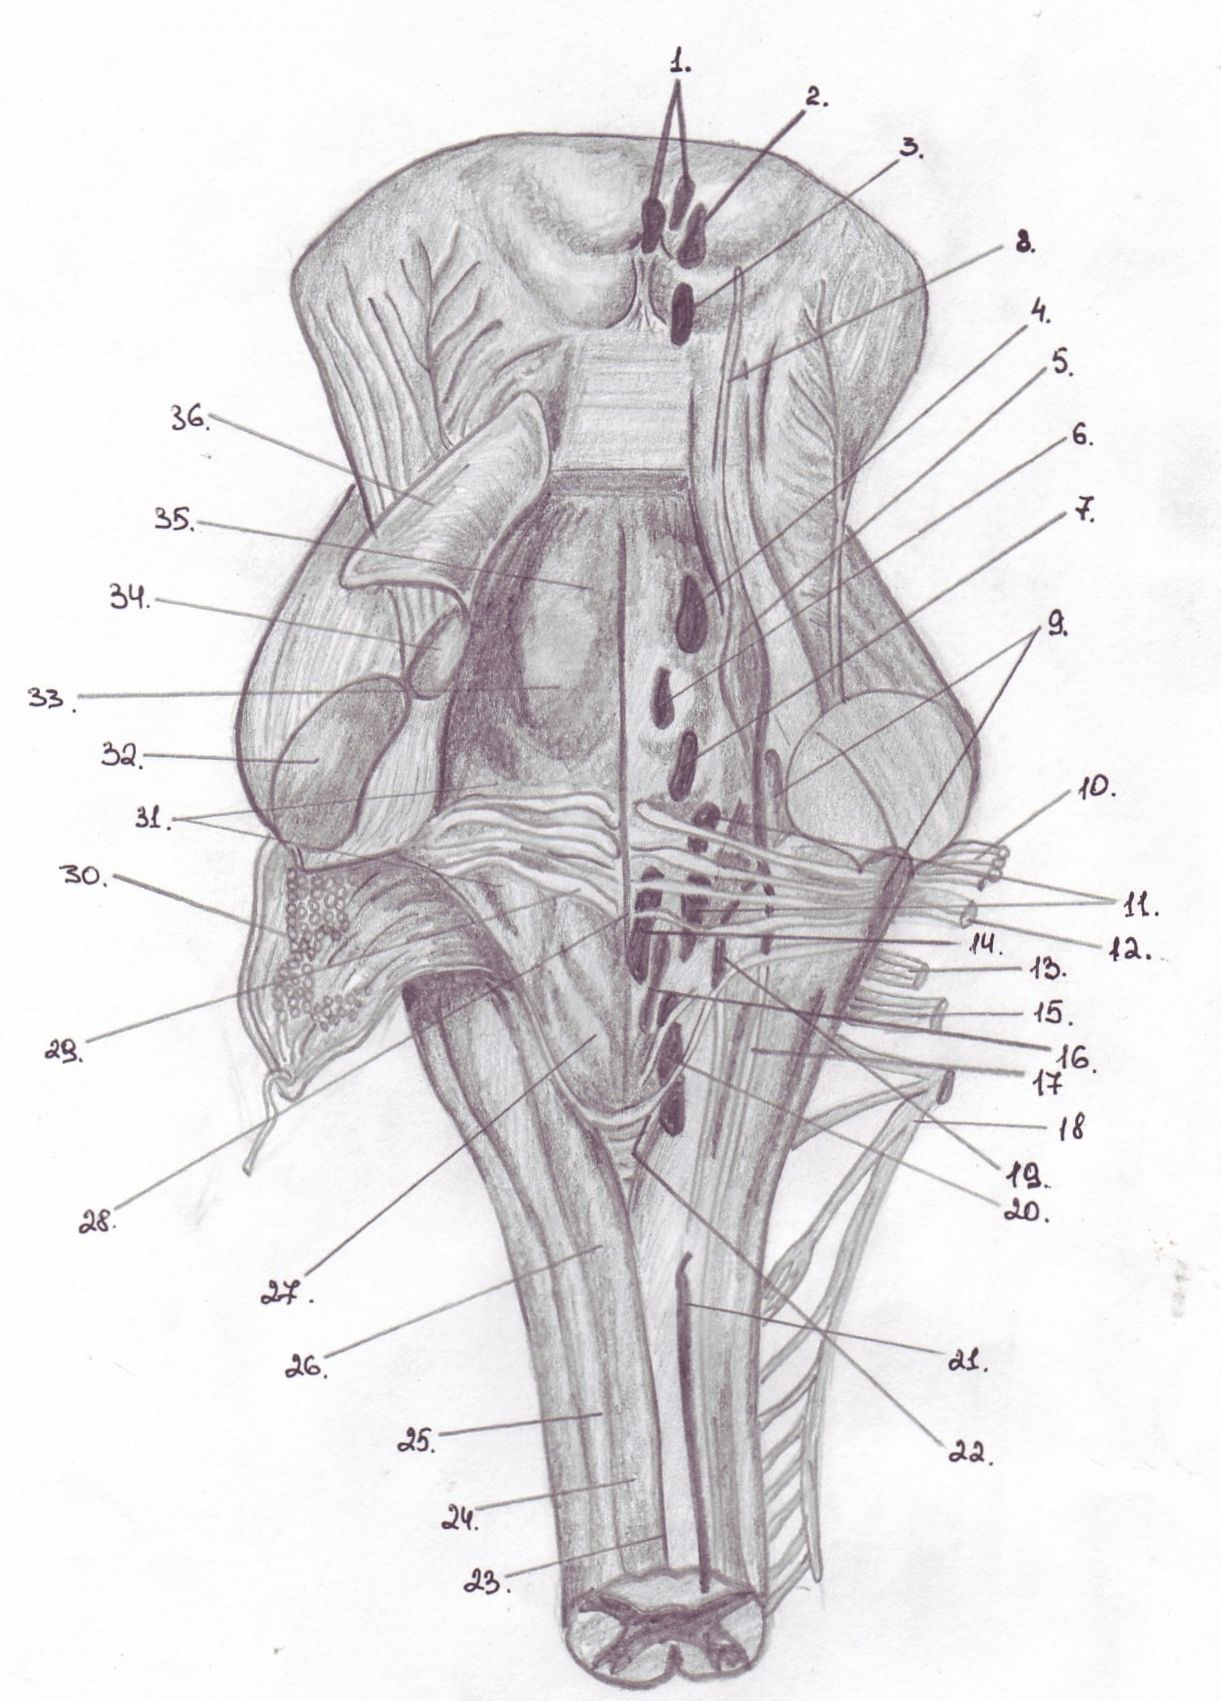 Ромбовидная ямка черепные нервы. Ромбовидная ямка мозга. Дорсальная поверхность продолговатого мозга. Ядра черепных:нервов 4 желудочек. Проекция ядер черепно-мозговых нервов на ромбовидную ямку.